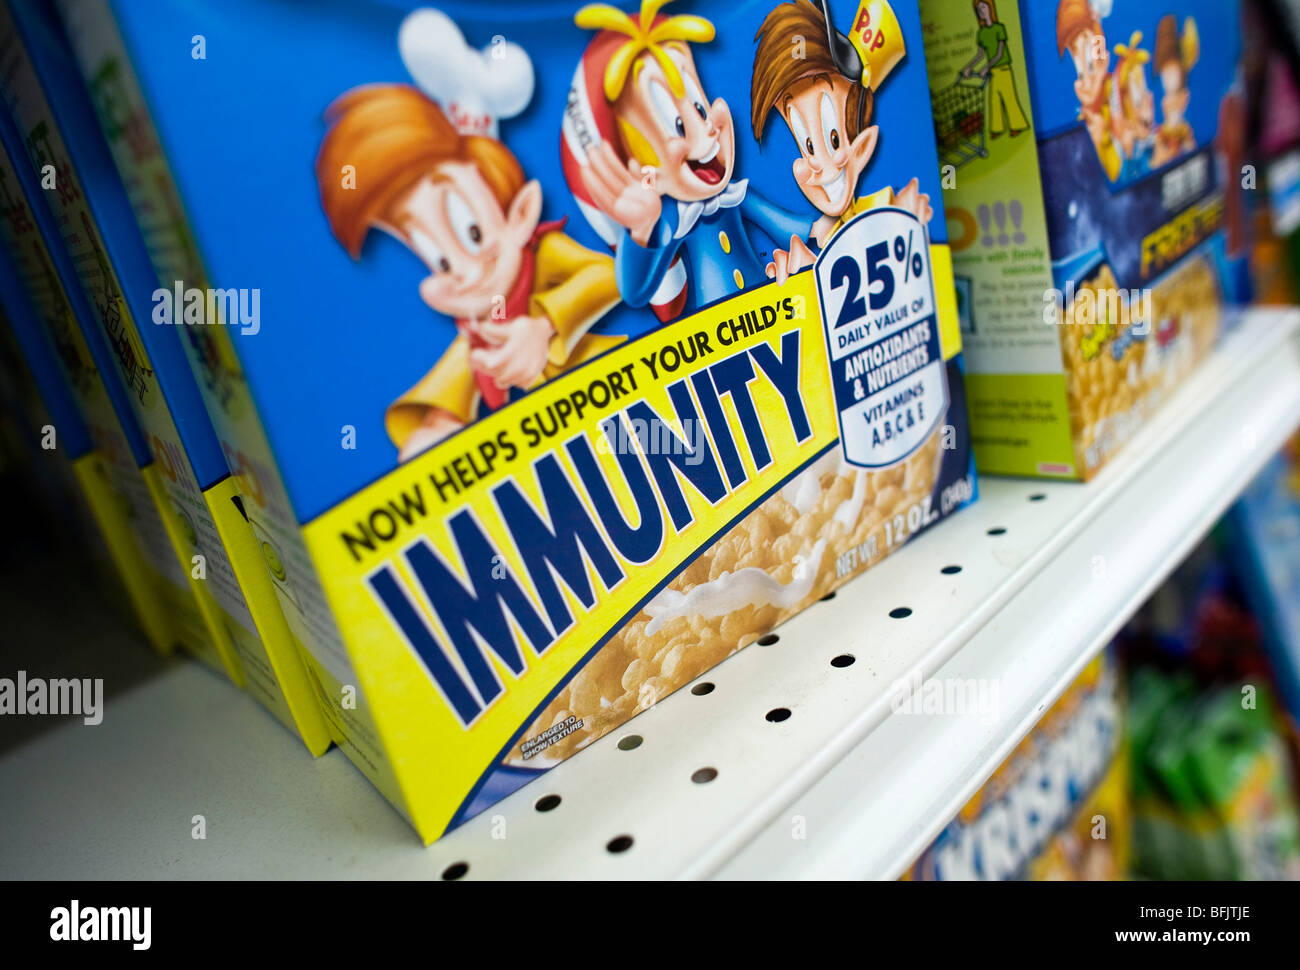 3 novembre 2009 – Frederick, Maryland – UN Kellogg’s Rice Krispies tratta la scatola dei cereali con l’etichettatura che sostiene che i cereali aiutano a rafforzare il sistema immunitario dei bambini. La controversa affermazione si trova tra le preoccupazioni sul virus influenzale H1N1 e i suoi effetti sui bambini. Foto Stock